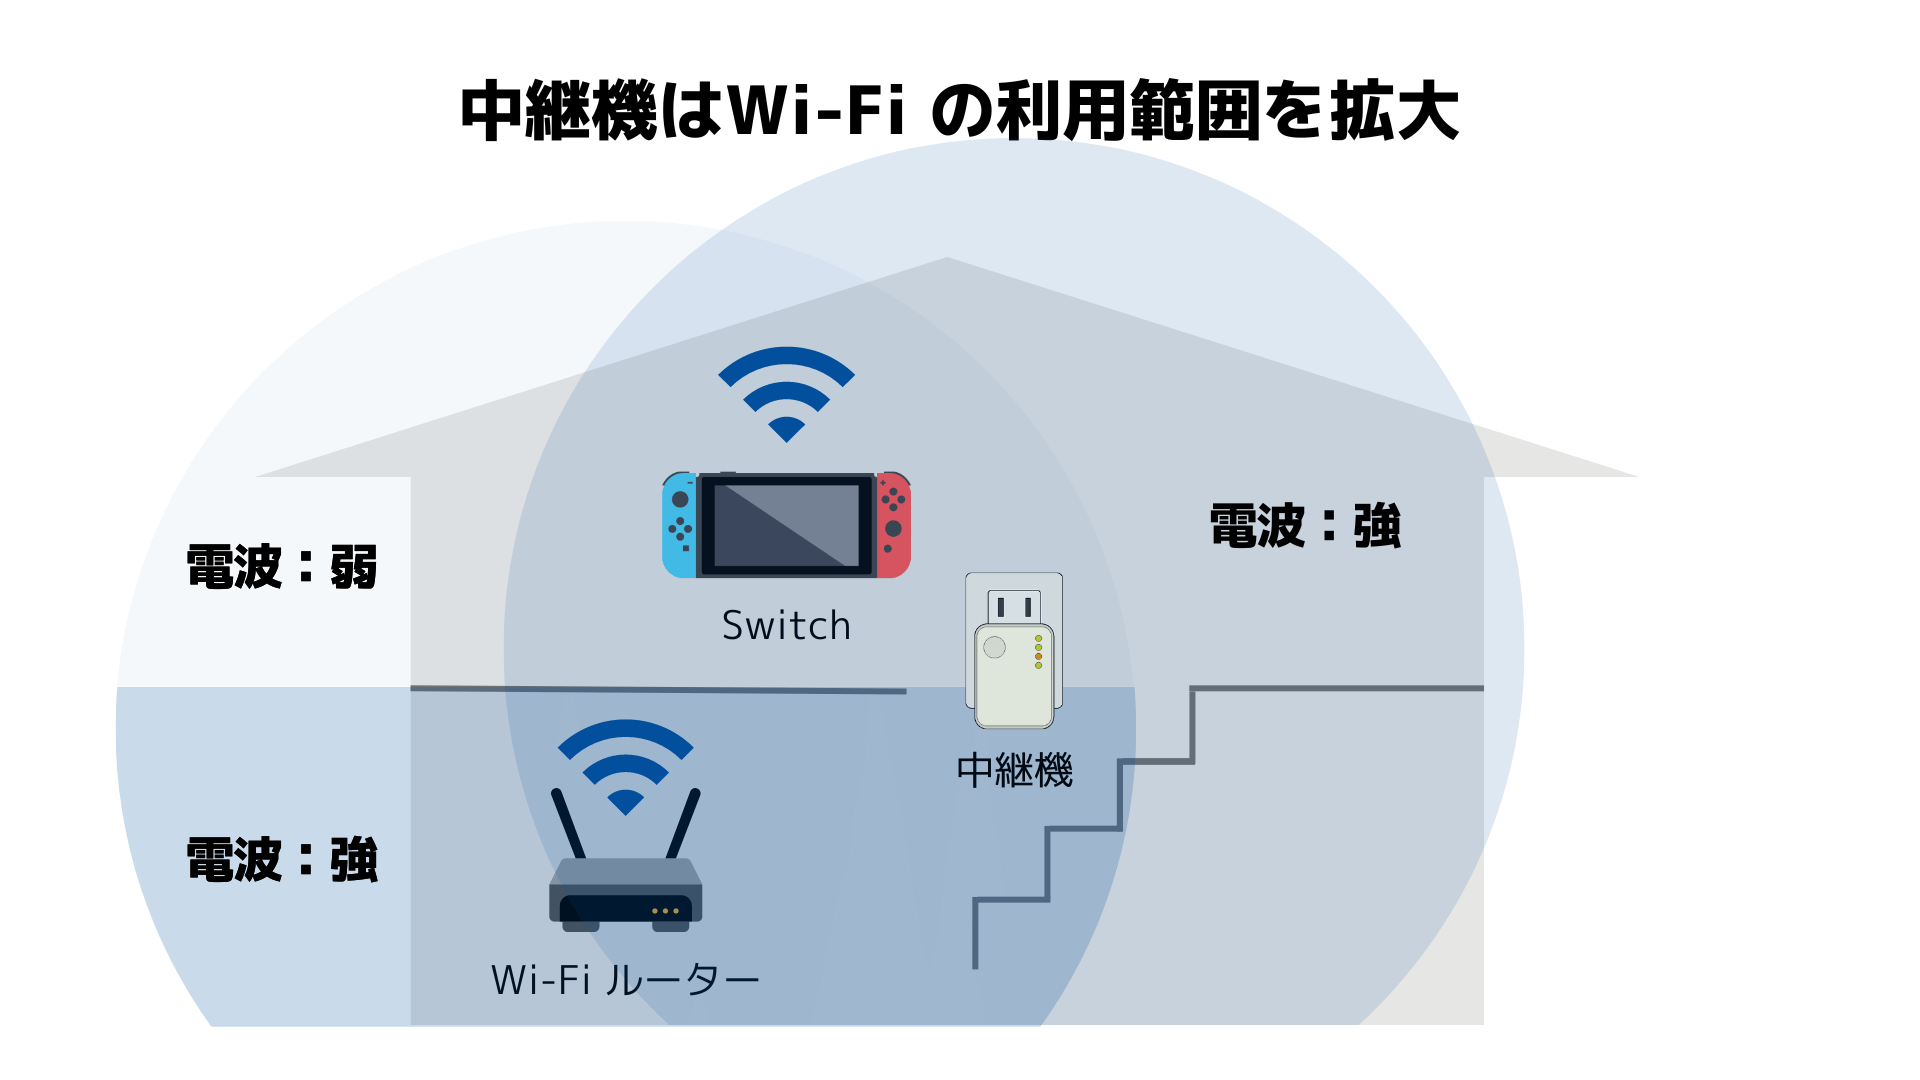 戸建てにWi-Fi中継機を設置したときのイメージ図